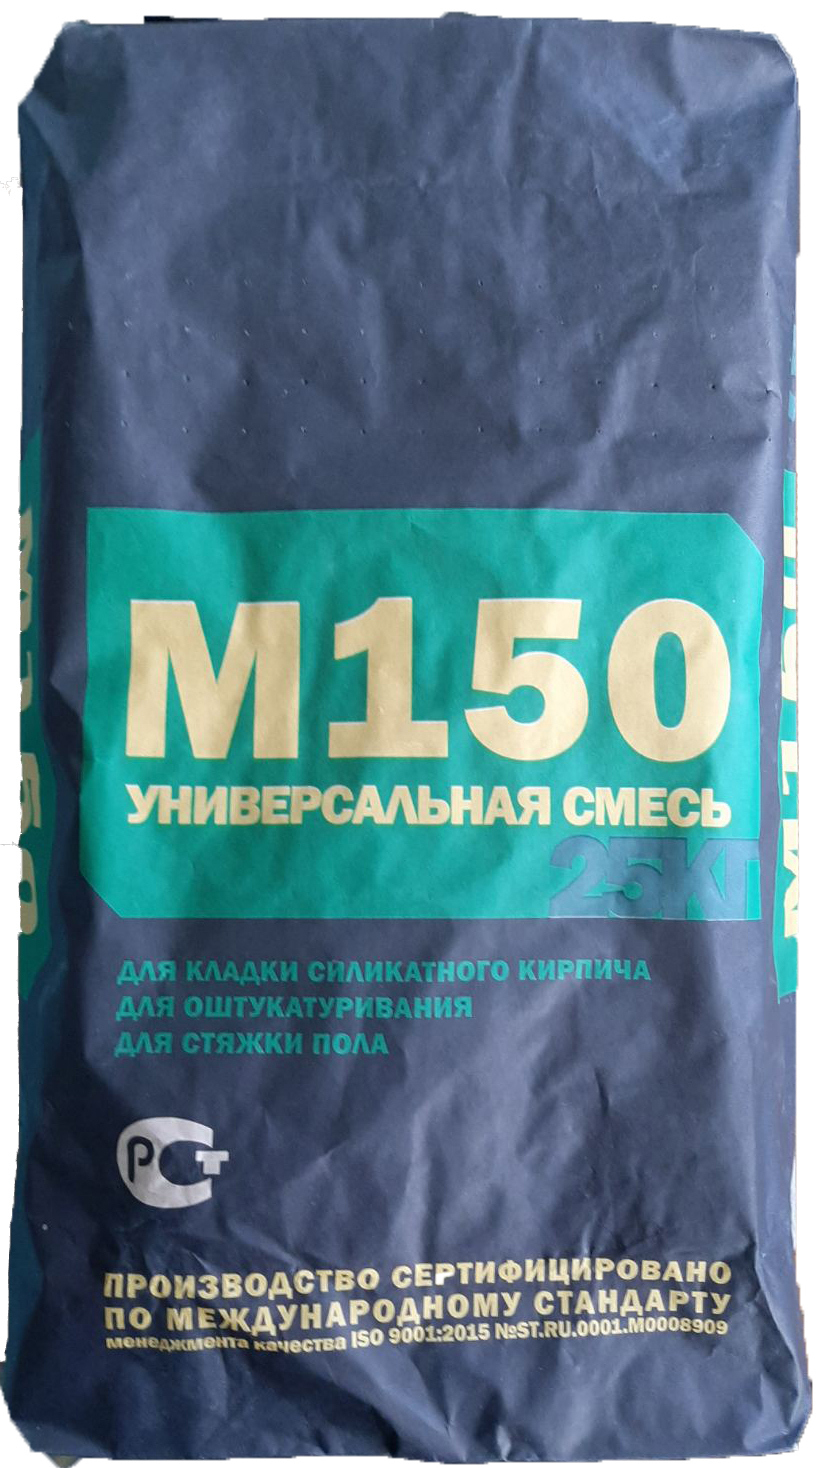 Сухая смесь универсальная м-150 25 кг в Казани –  по низкой цене .